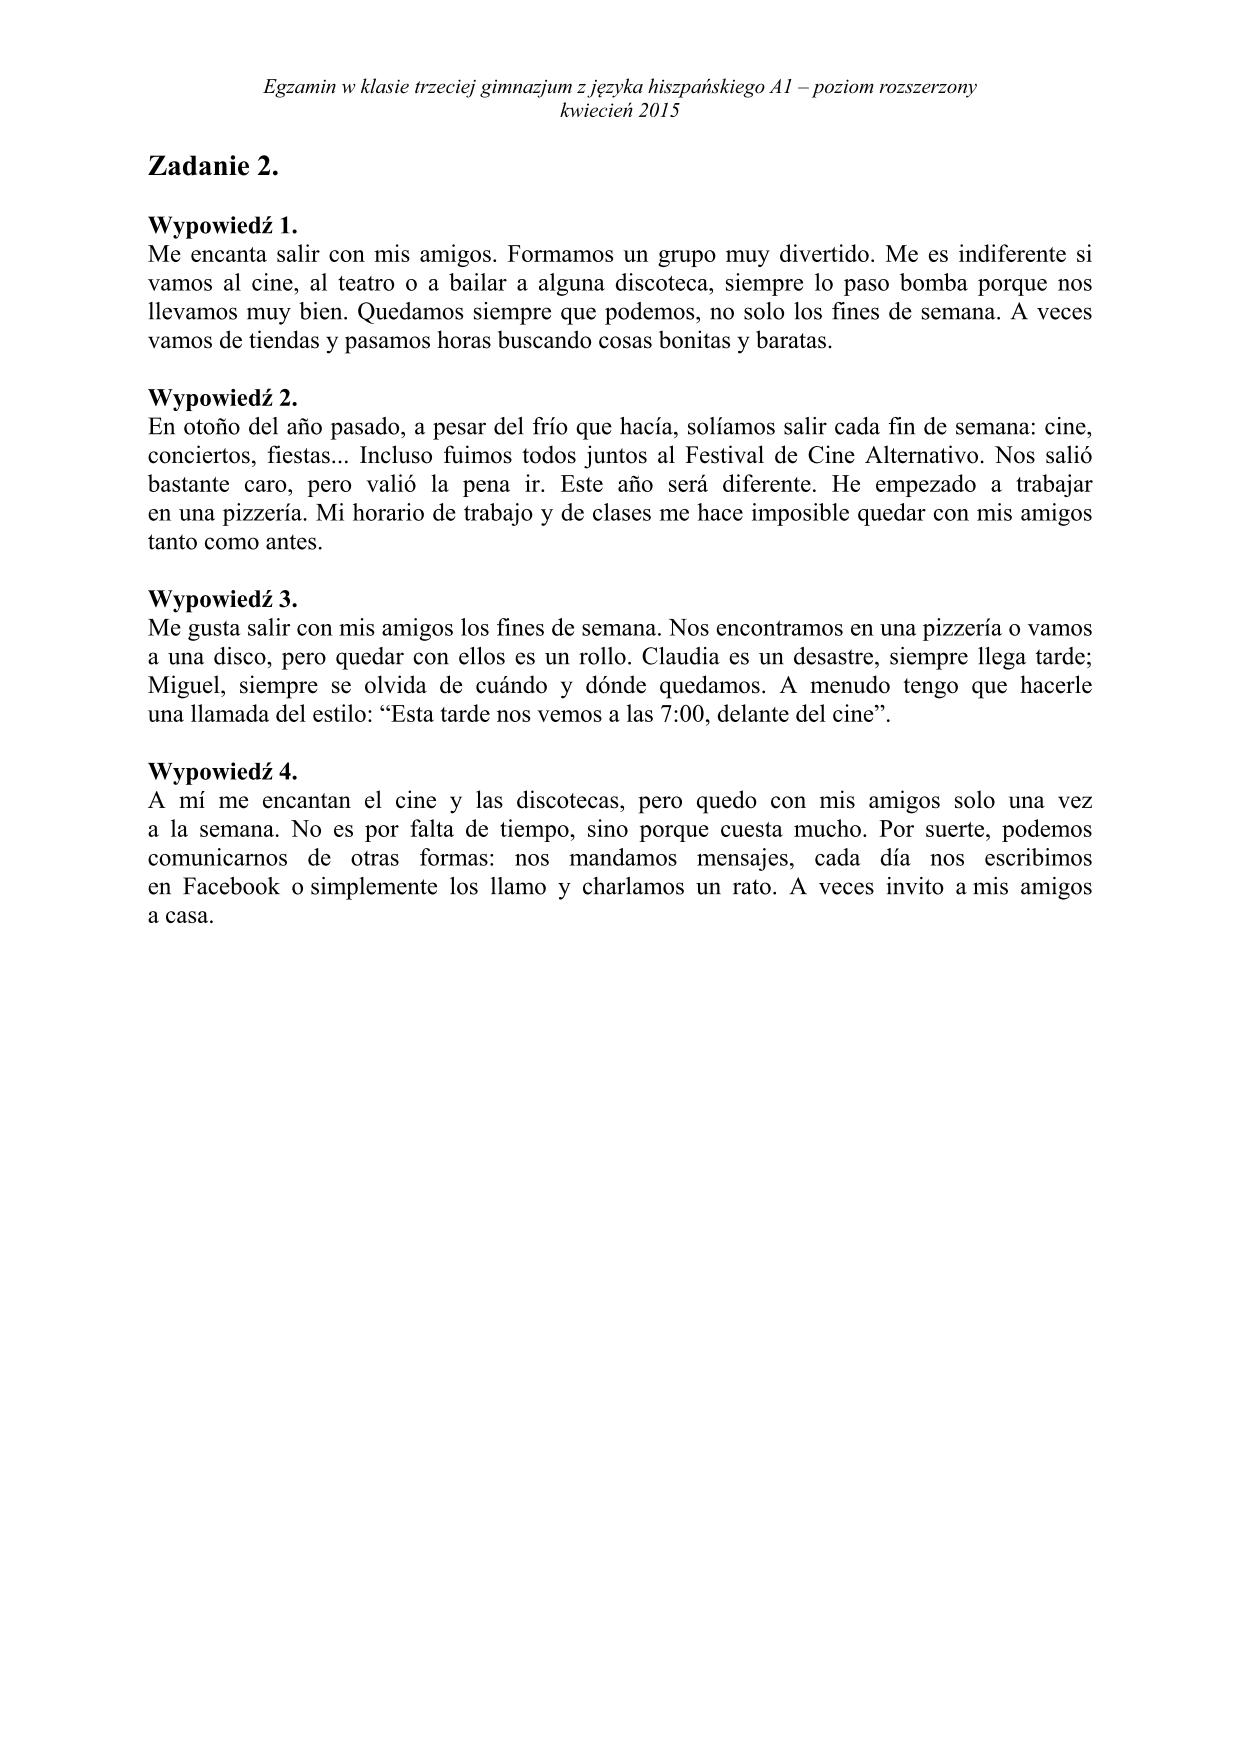 transkrypcja-hiszpański-poziom-rozszerzony-egzamin-gimnazjalny-2015-2